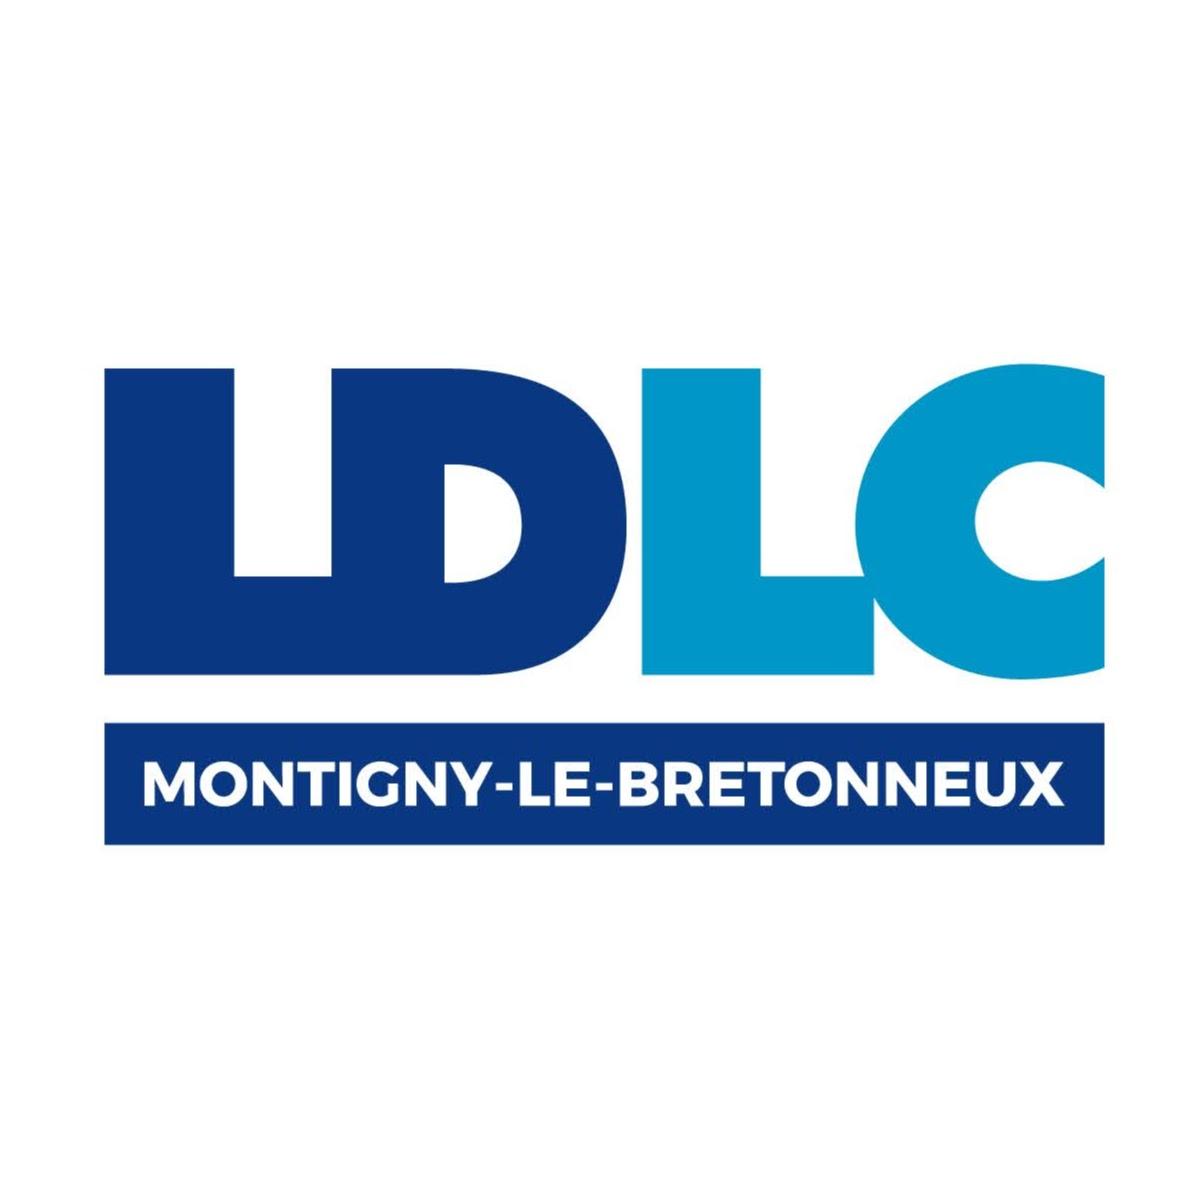 Ldlc Montigny-le-bretonneux Montigny Le Bretonneux